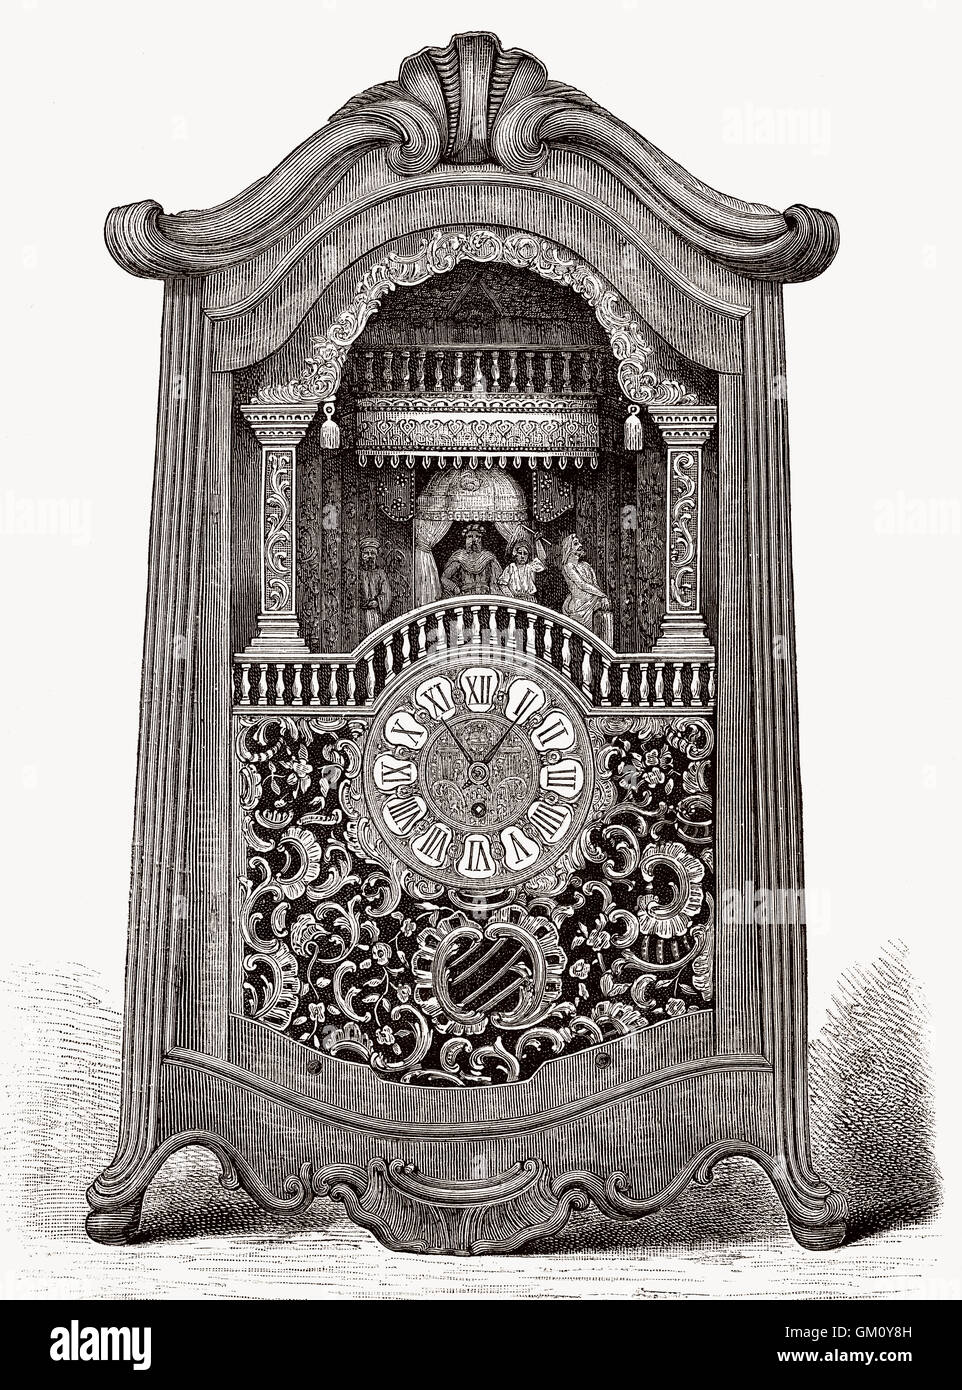 Une ancienne horloge avec une boîte à musique, 18e siècle Banque D'Images